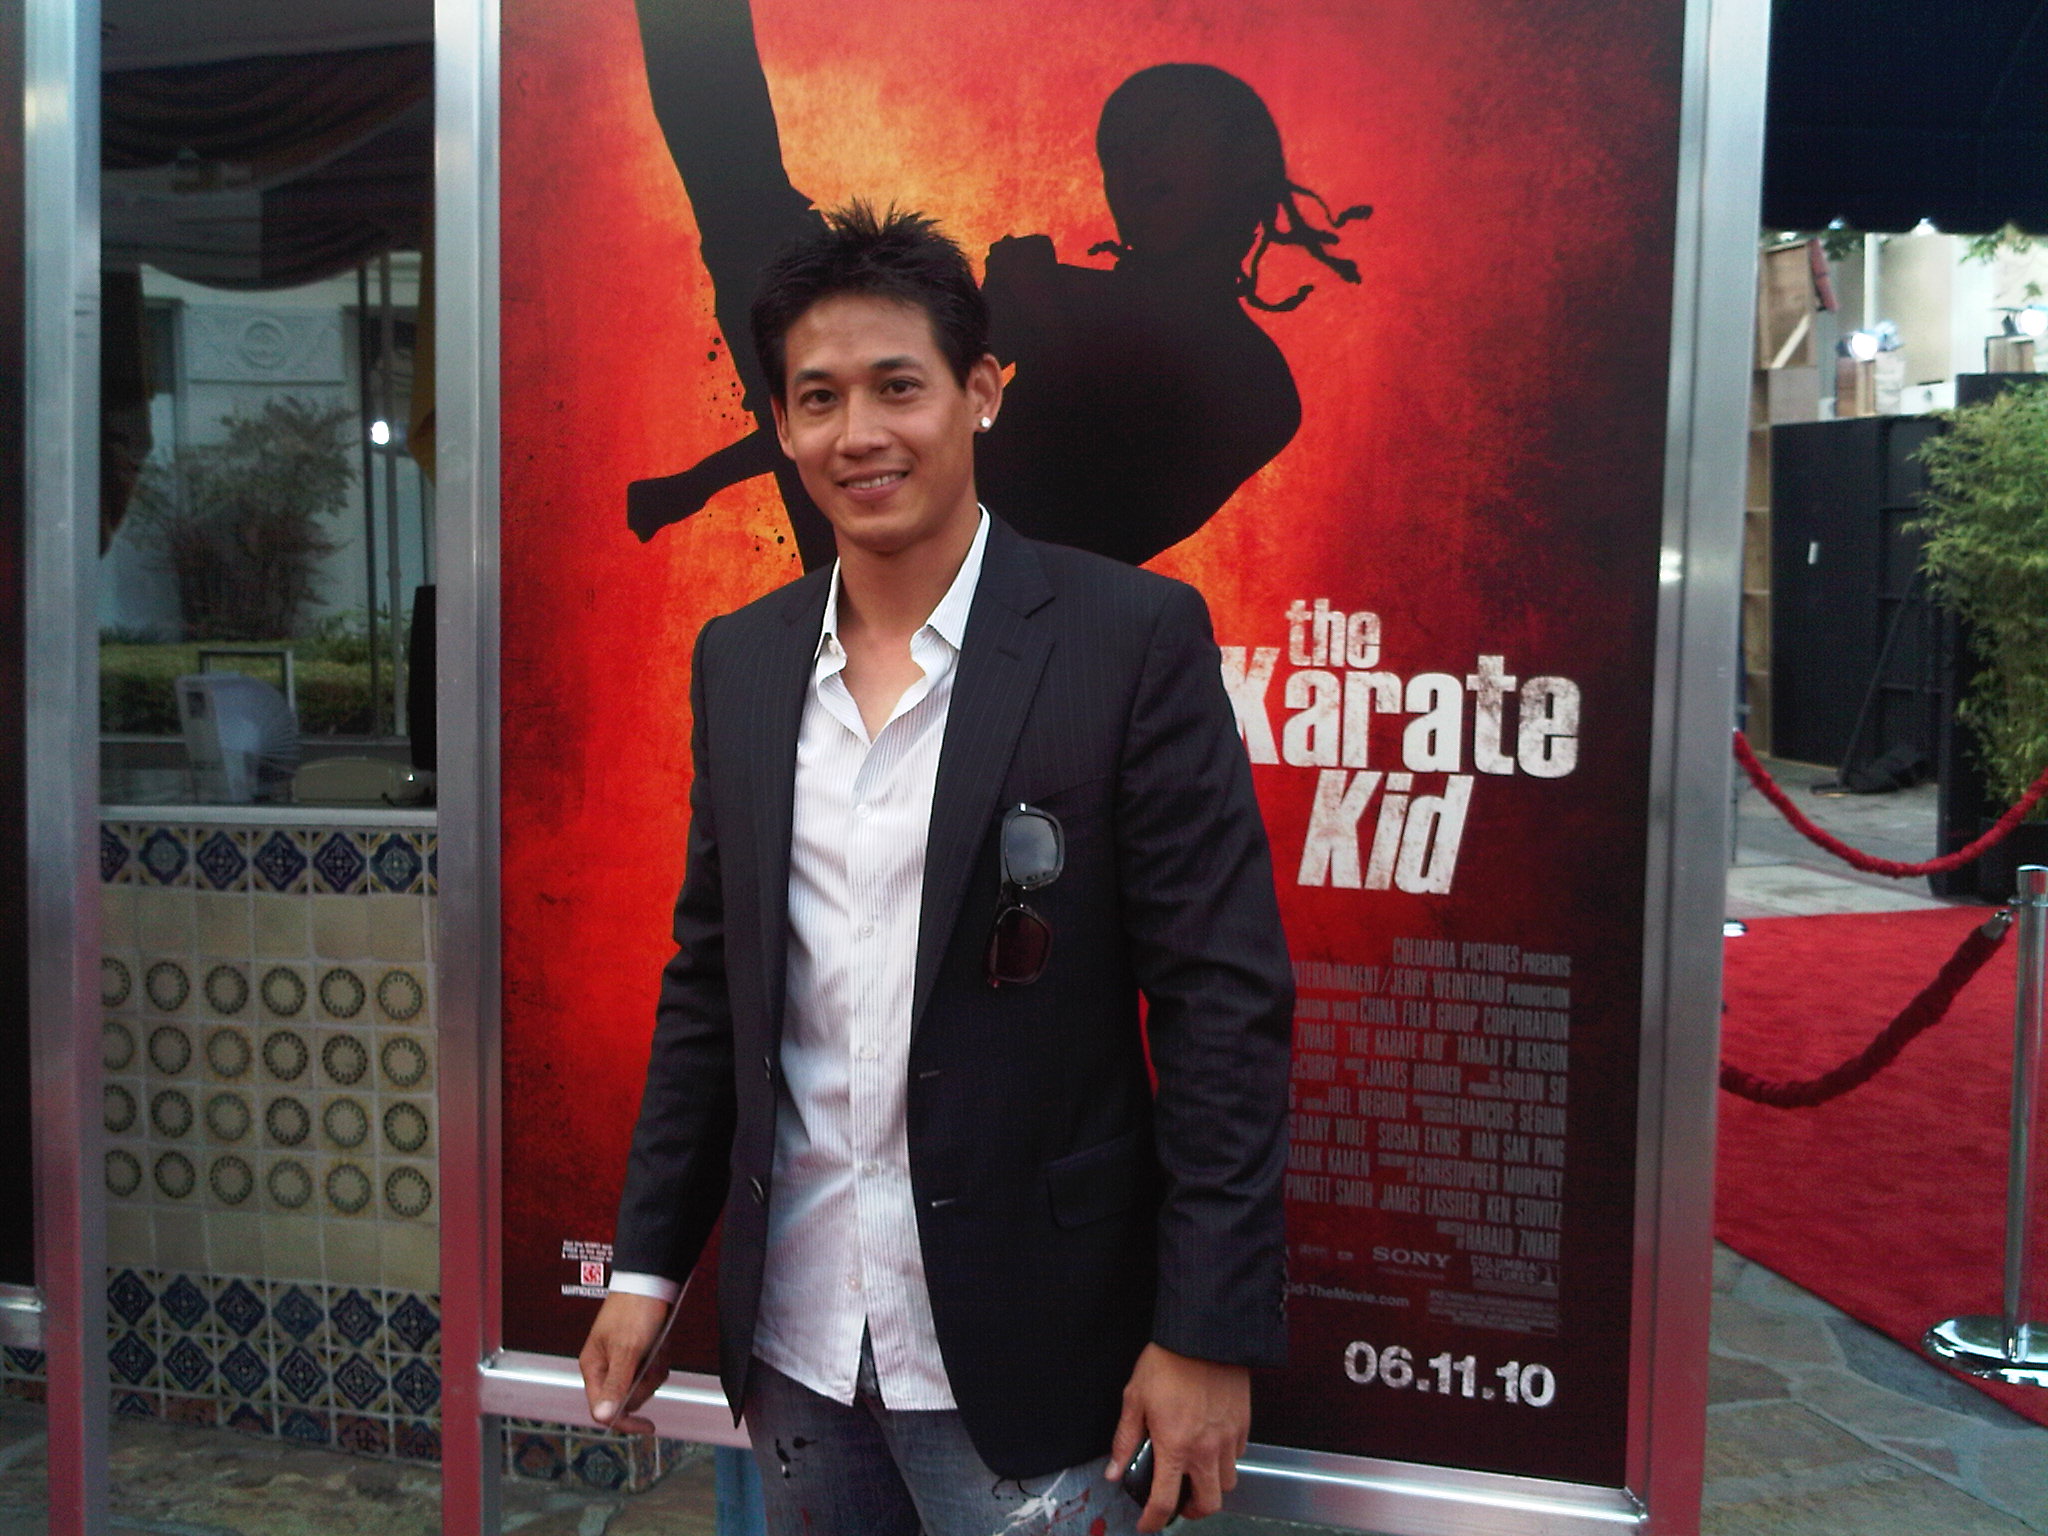 The Karate Kid Premier